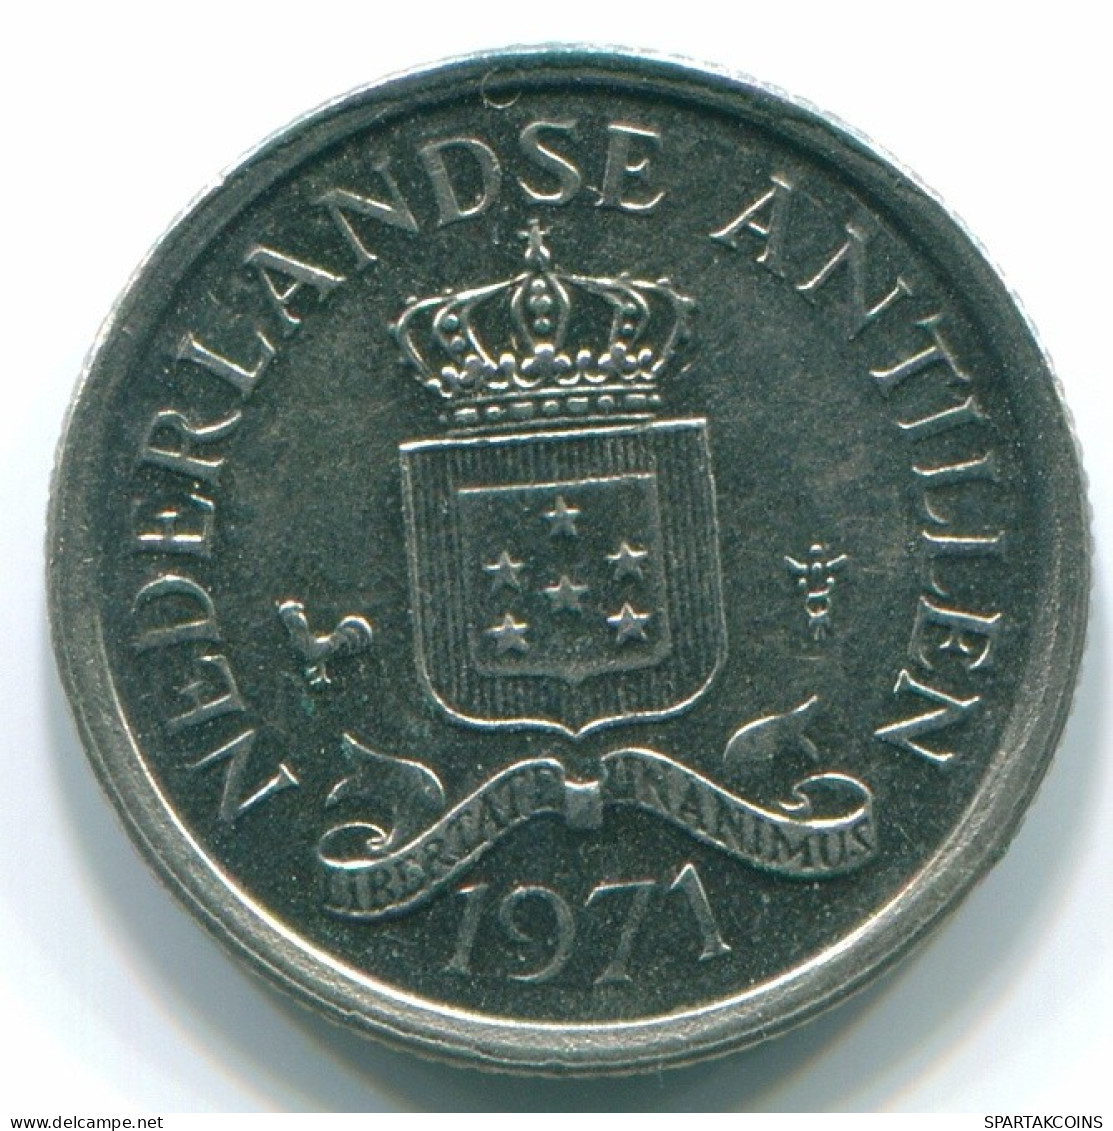 10 CENTS 1971 NIEDERLÄNDISCHE ANTILLEN Nickel Koloniale Münze #S13408.D.A - Niederländische Antillen